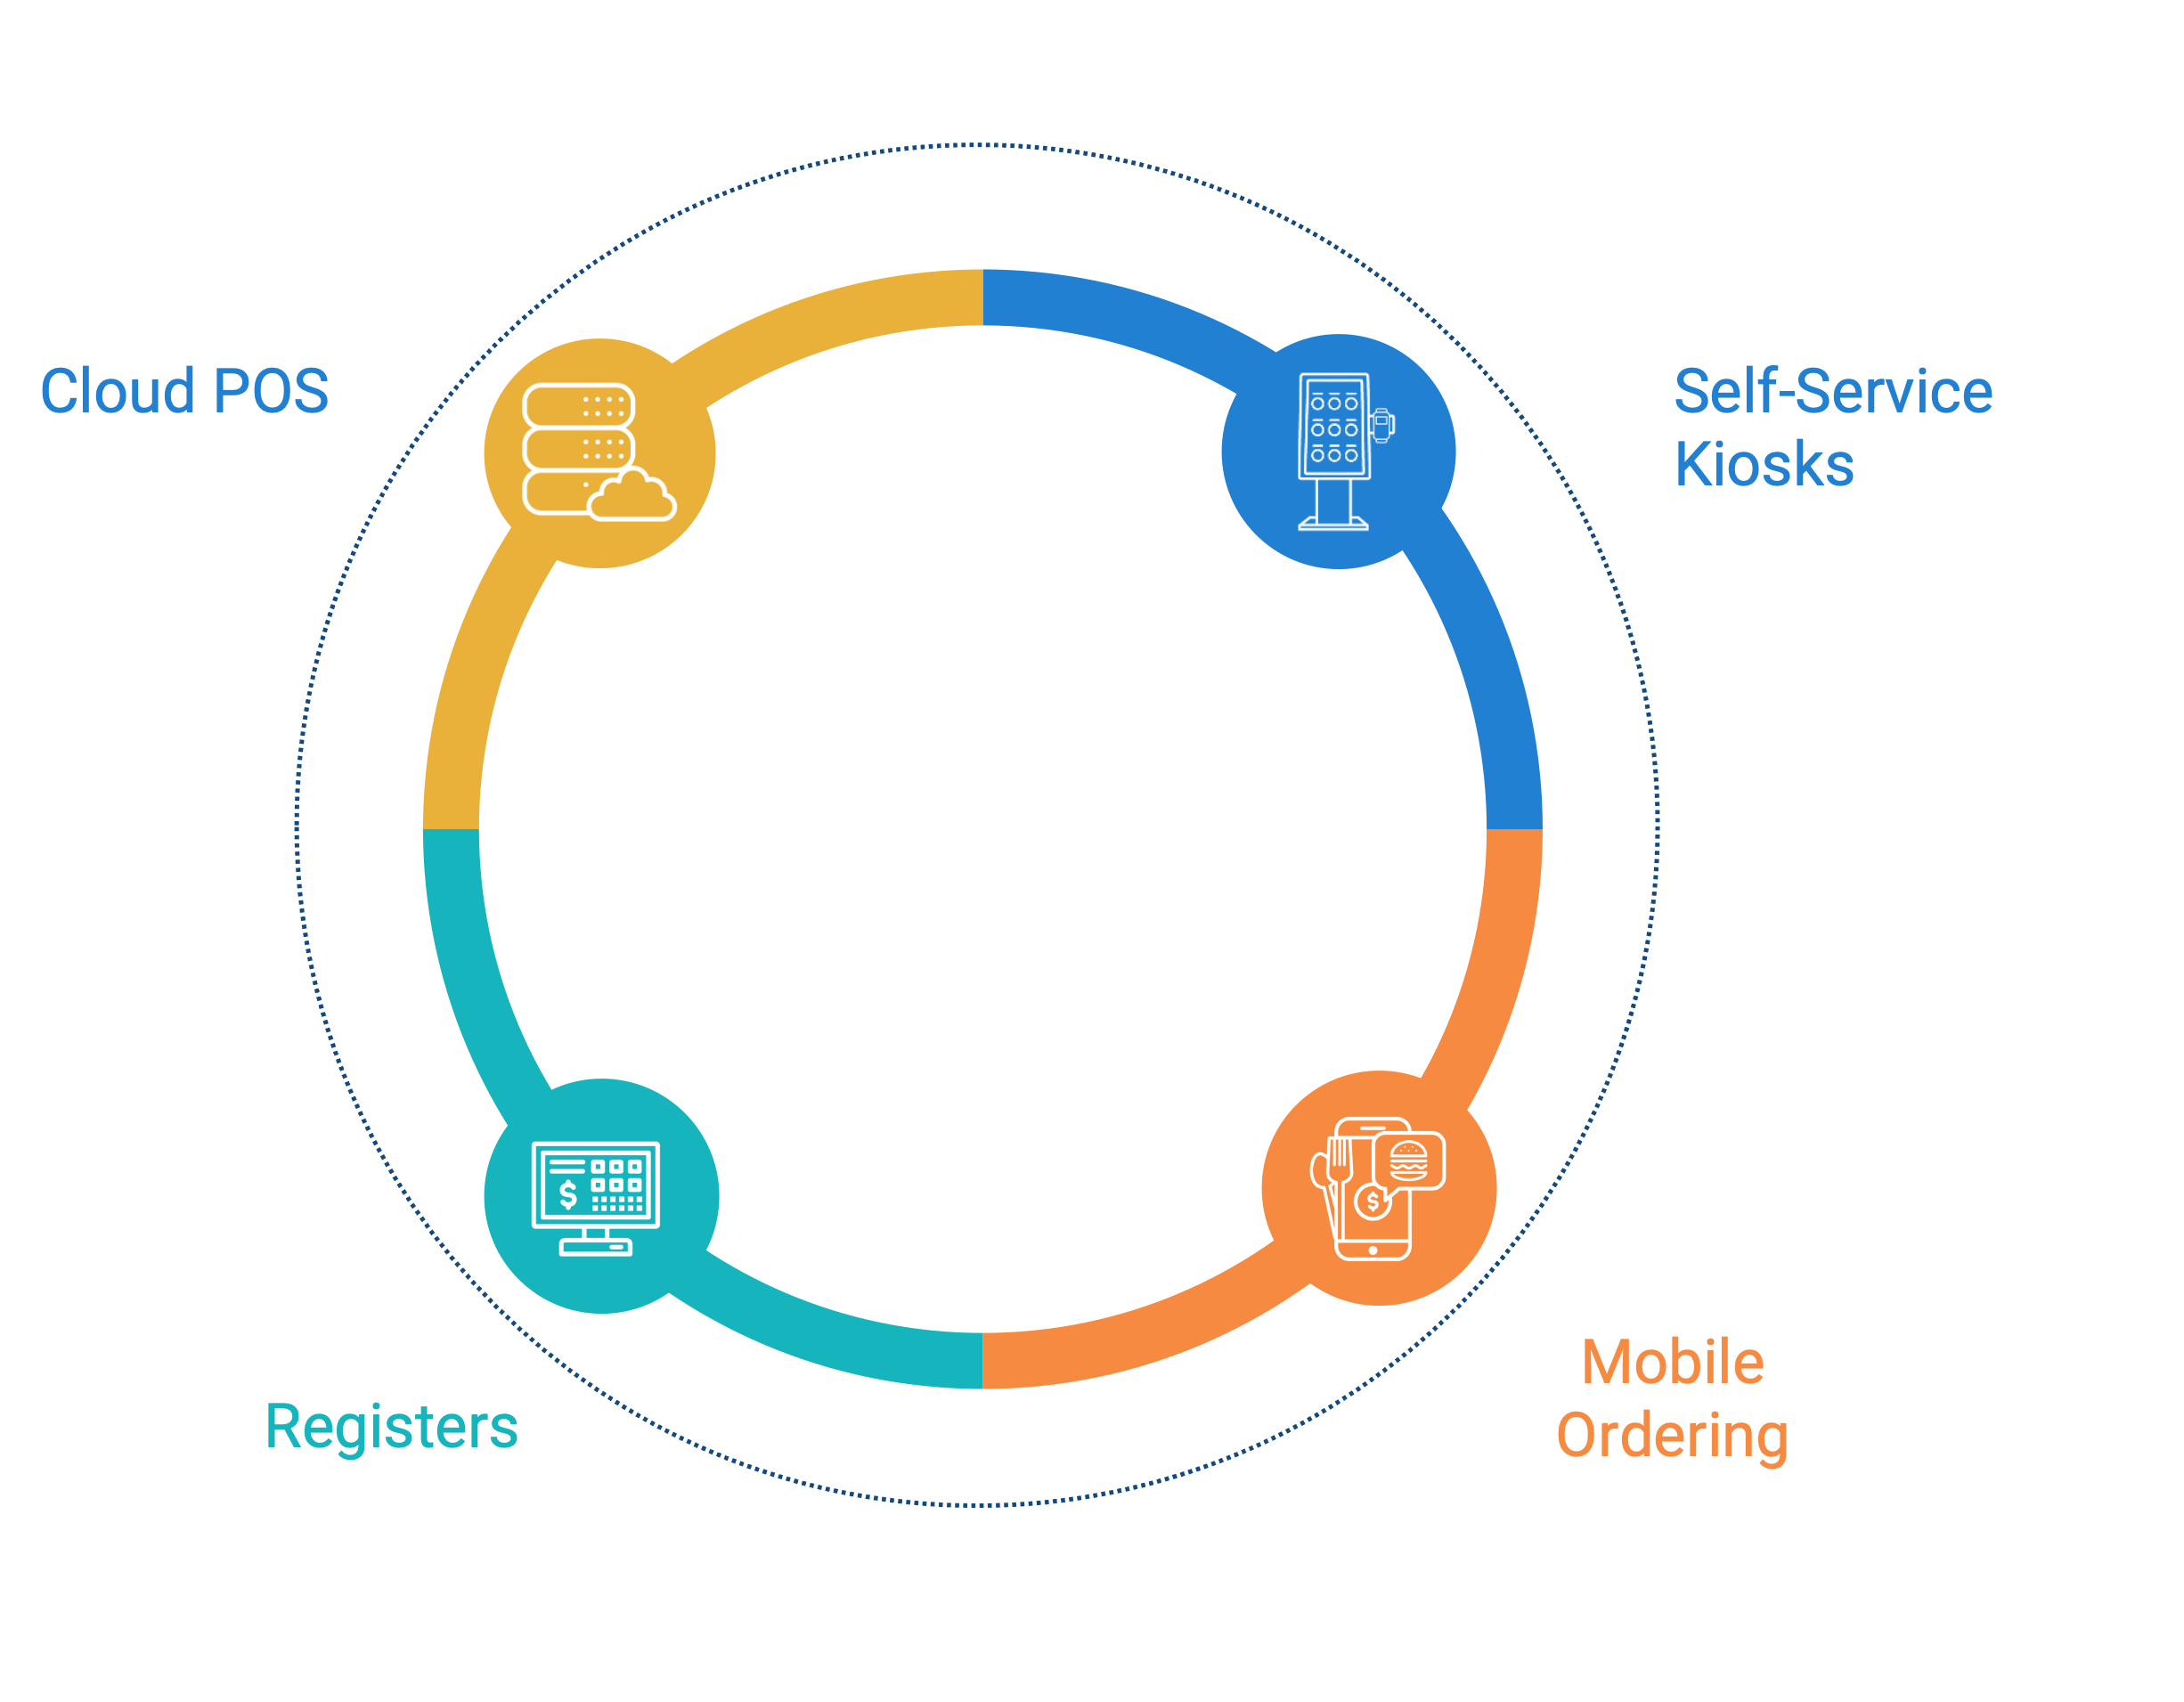 Transact Campus Commerce Diagram